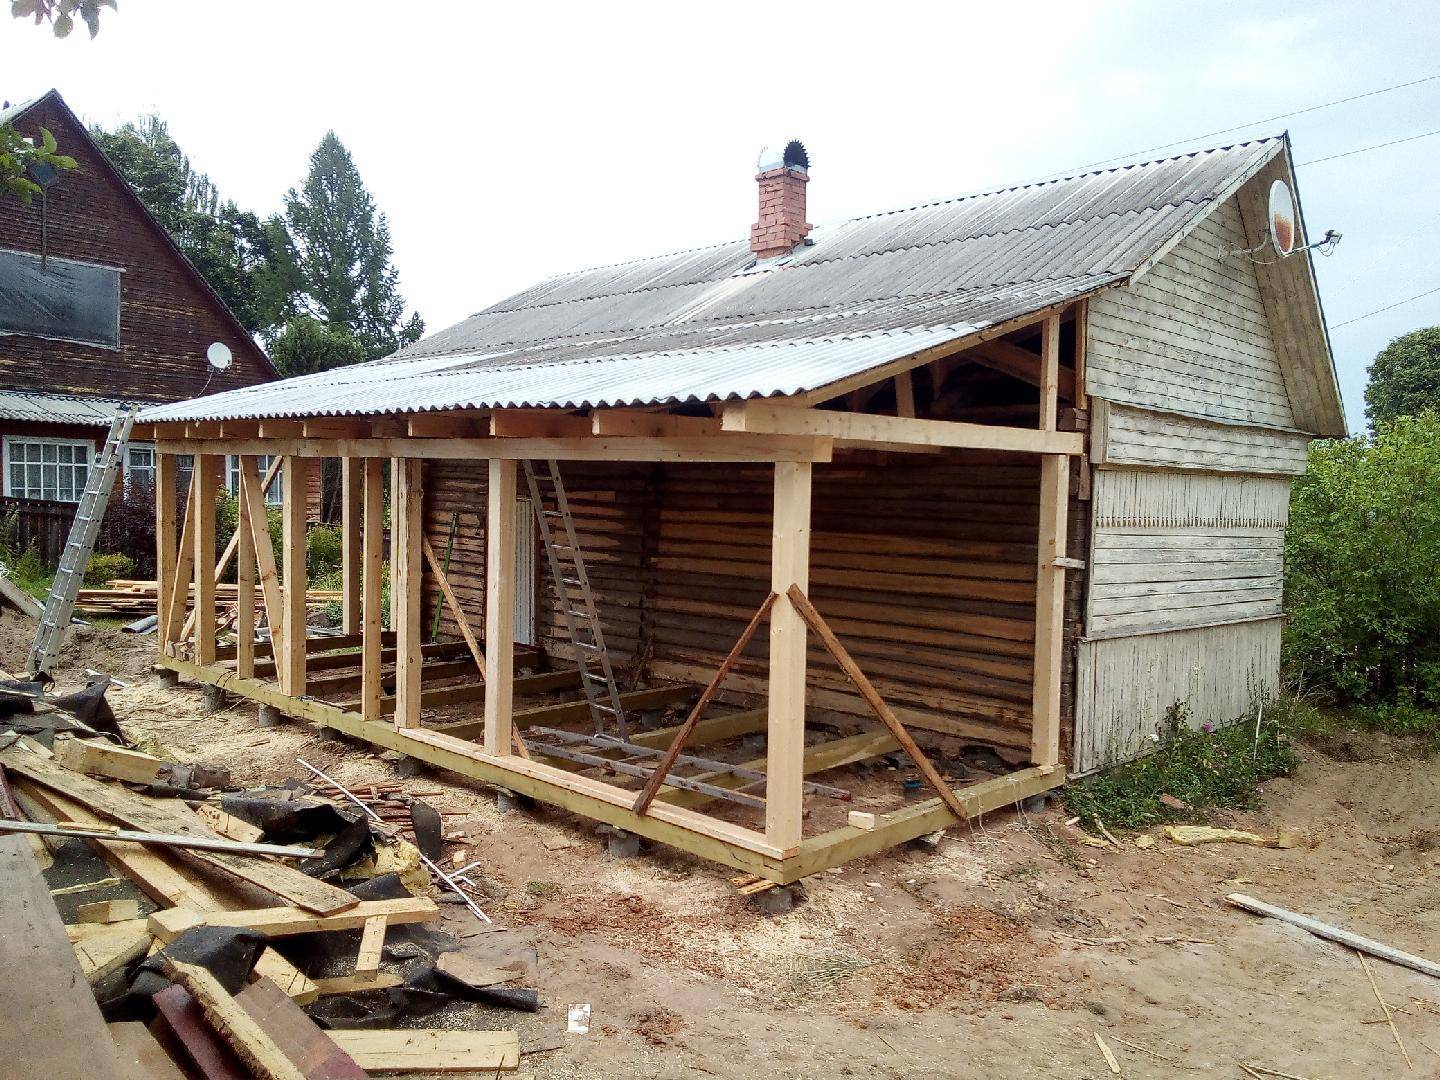 Как сделать пристрой к деревянному дому — пошаговая инструкция по проектированию и постройке пристройке (105 фото и видео)